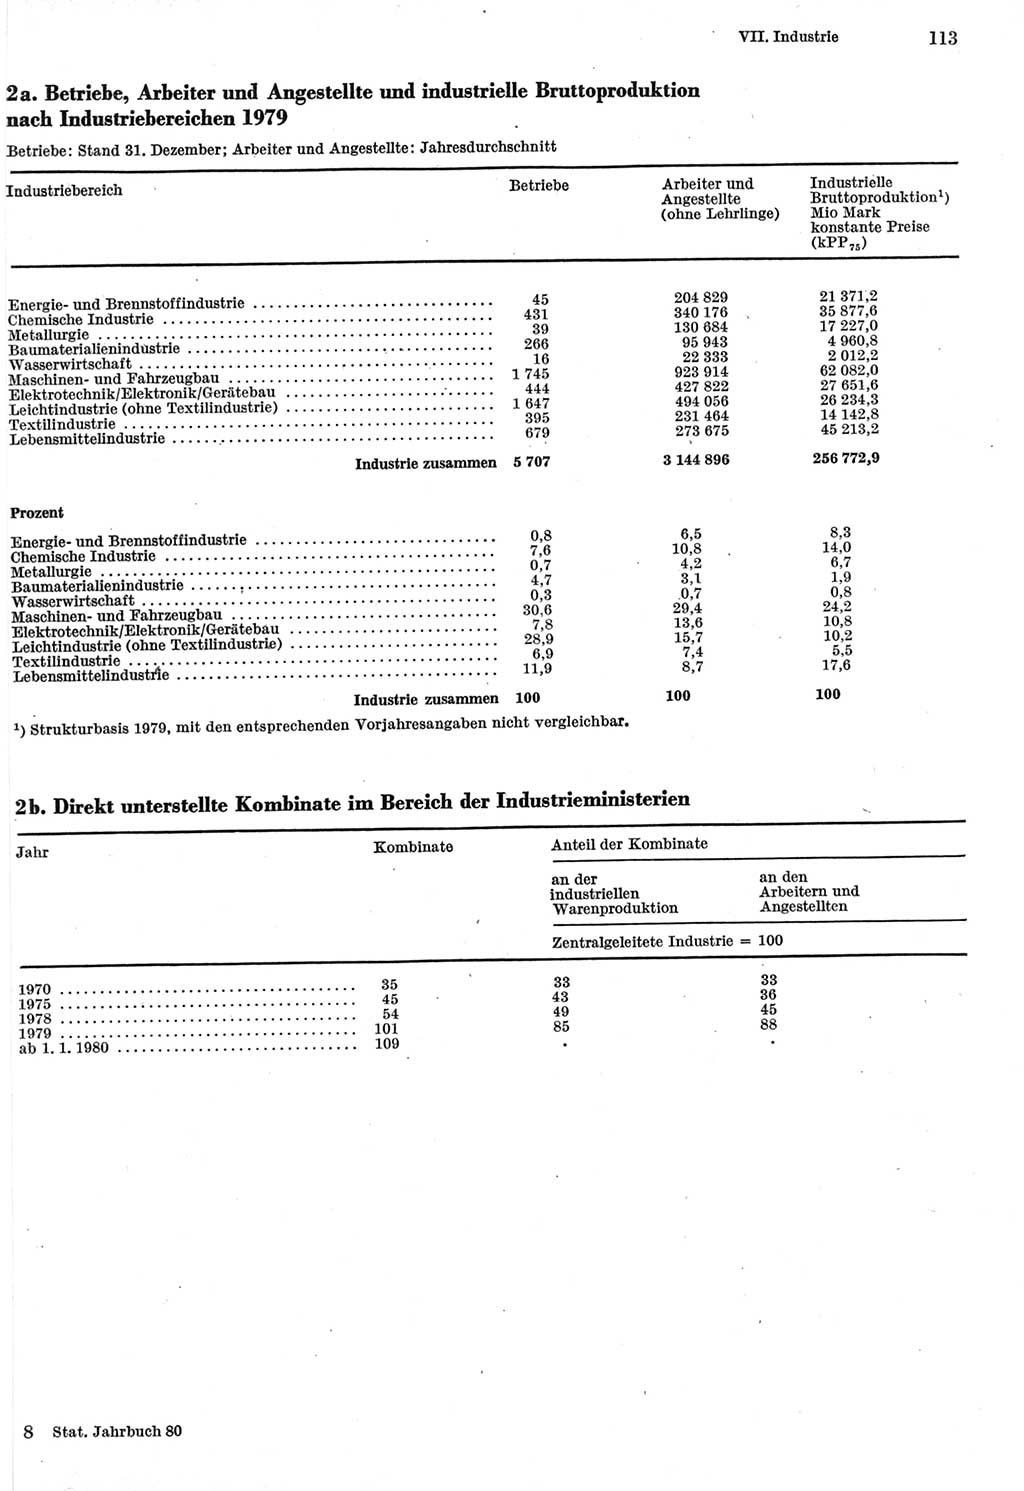 Statistisches Jahrbuch der Deutschen Demokratischen Republik (DDR) 1980, Seite 113 (Stat. Jb. DDR 1980, S. 113)